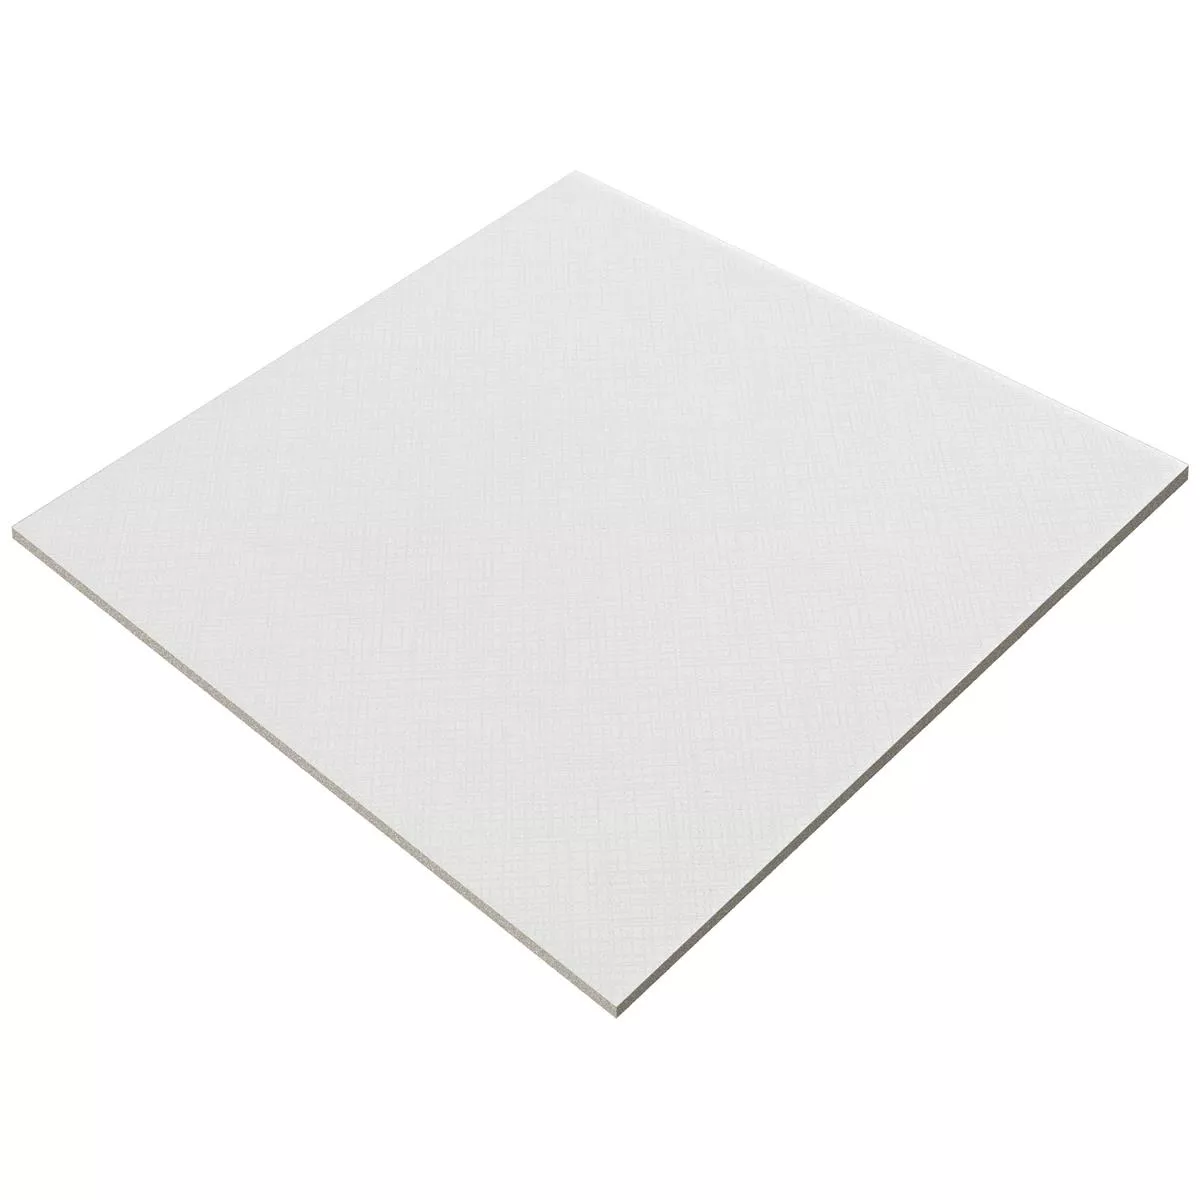 Próbka Płytki Podłogowe Cement Optyka Wildflower Biały Płytka Podstawowa 18,5x18,5cm